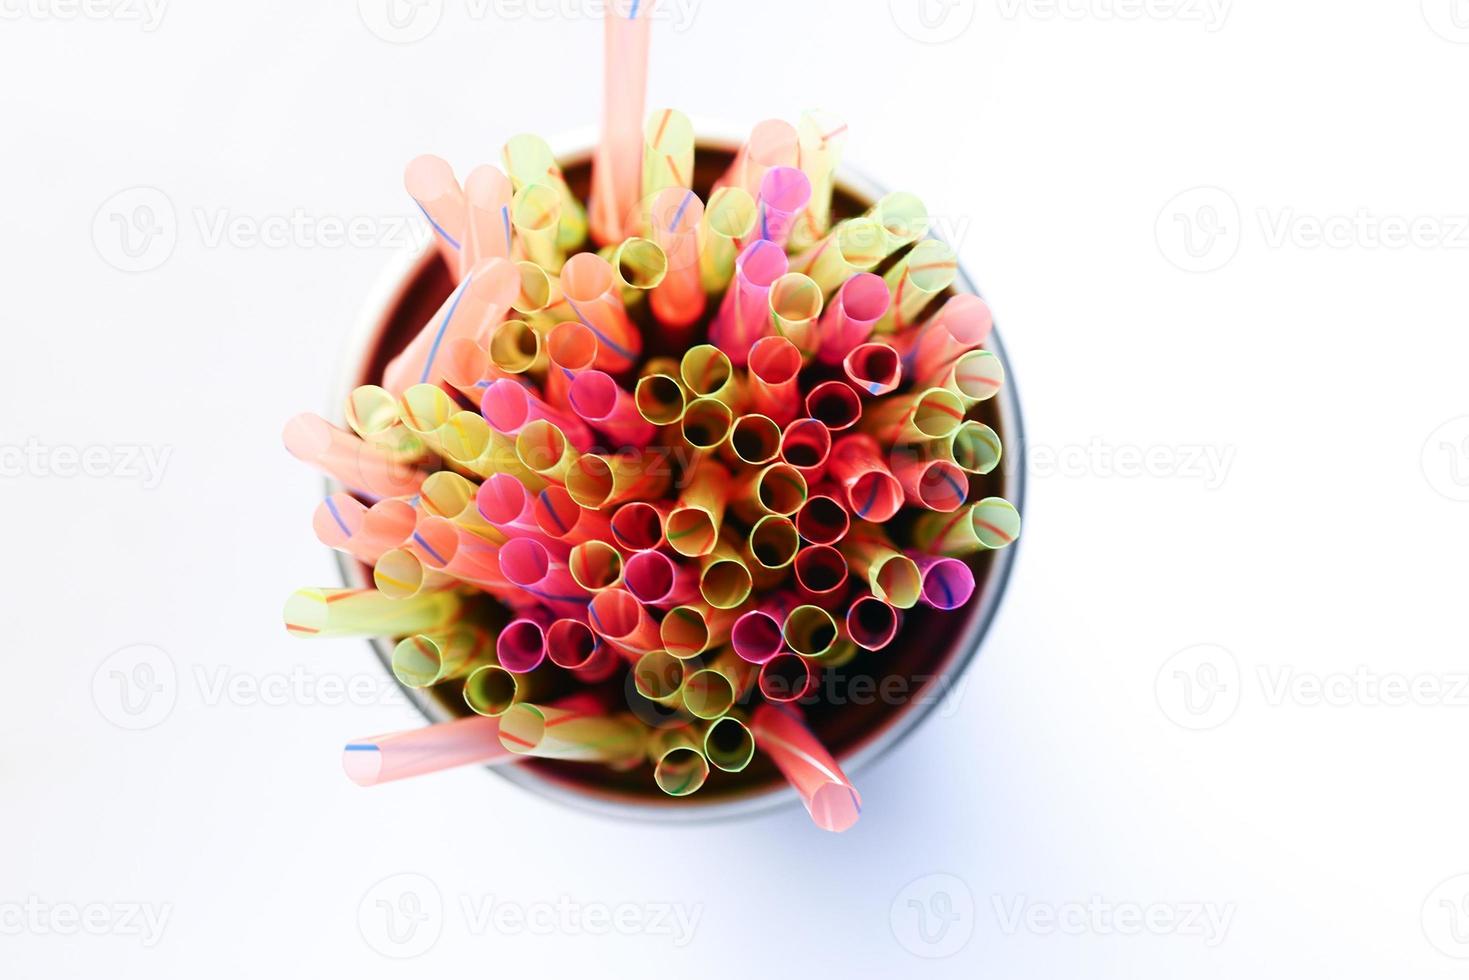 Colored striped bright plastic straws in a jar photo